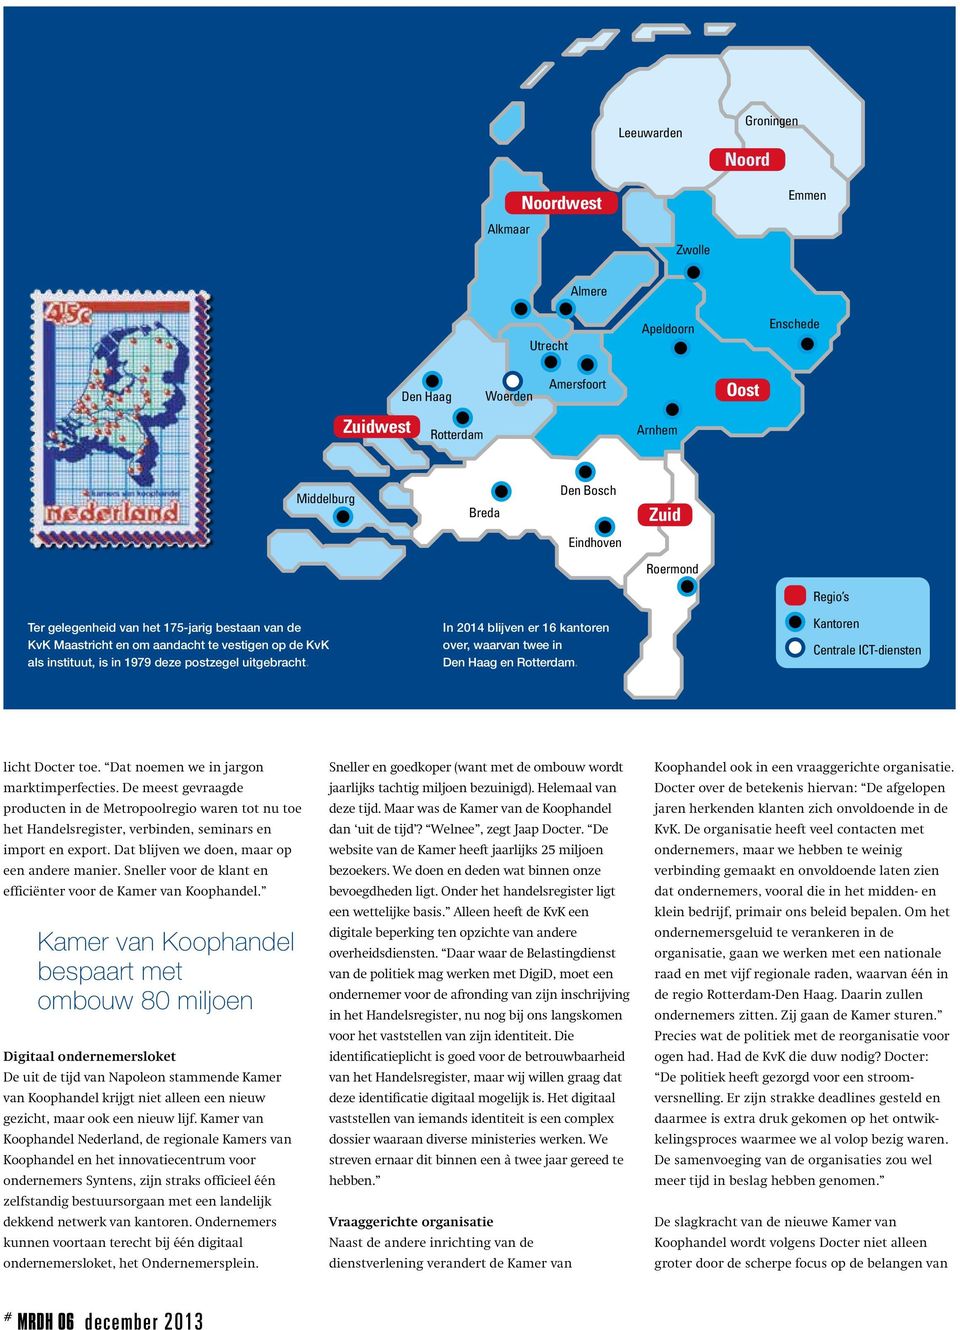 postzegel uitgebracht. In 2014 blijven er 16 kantoren over, waarvan twee in Den Haag en Rotterdam. Kantoren Centrale ICT-diensten No Alkmaar licht Docter toe.